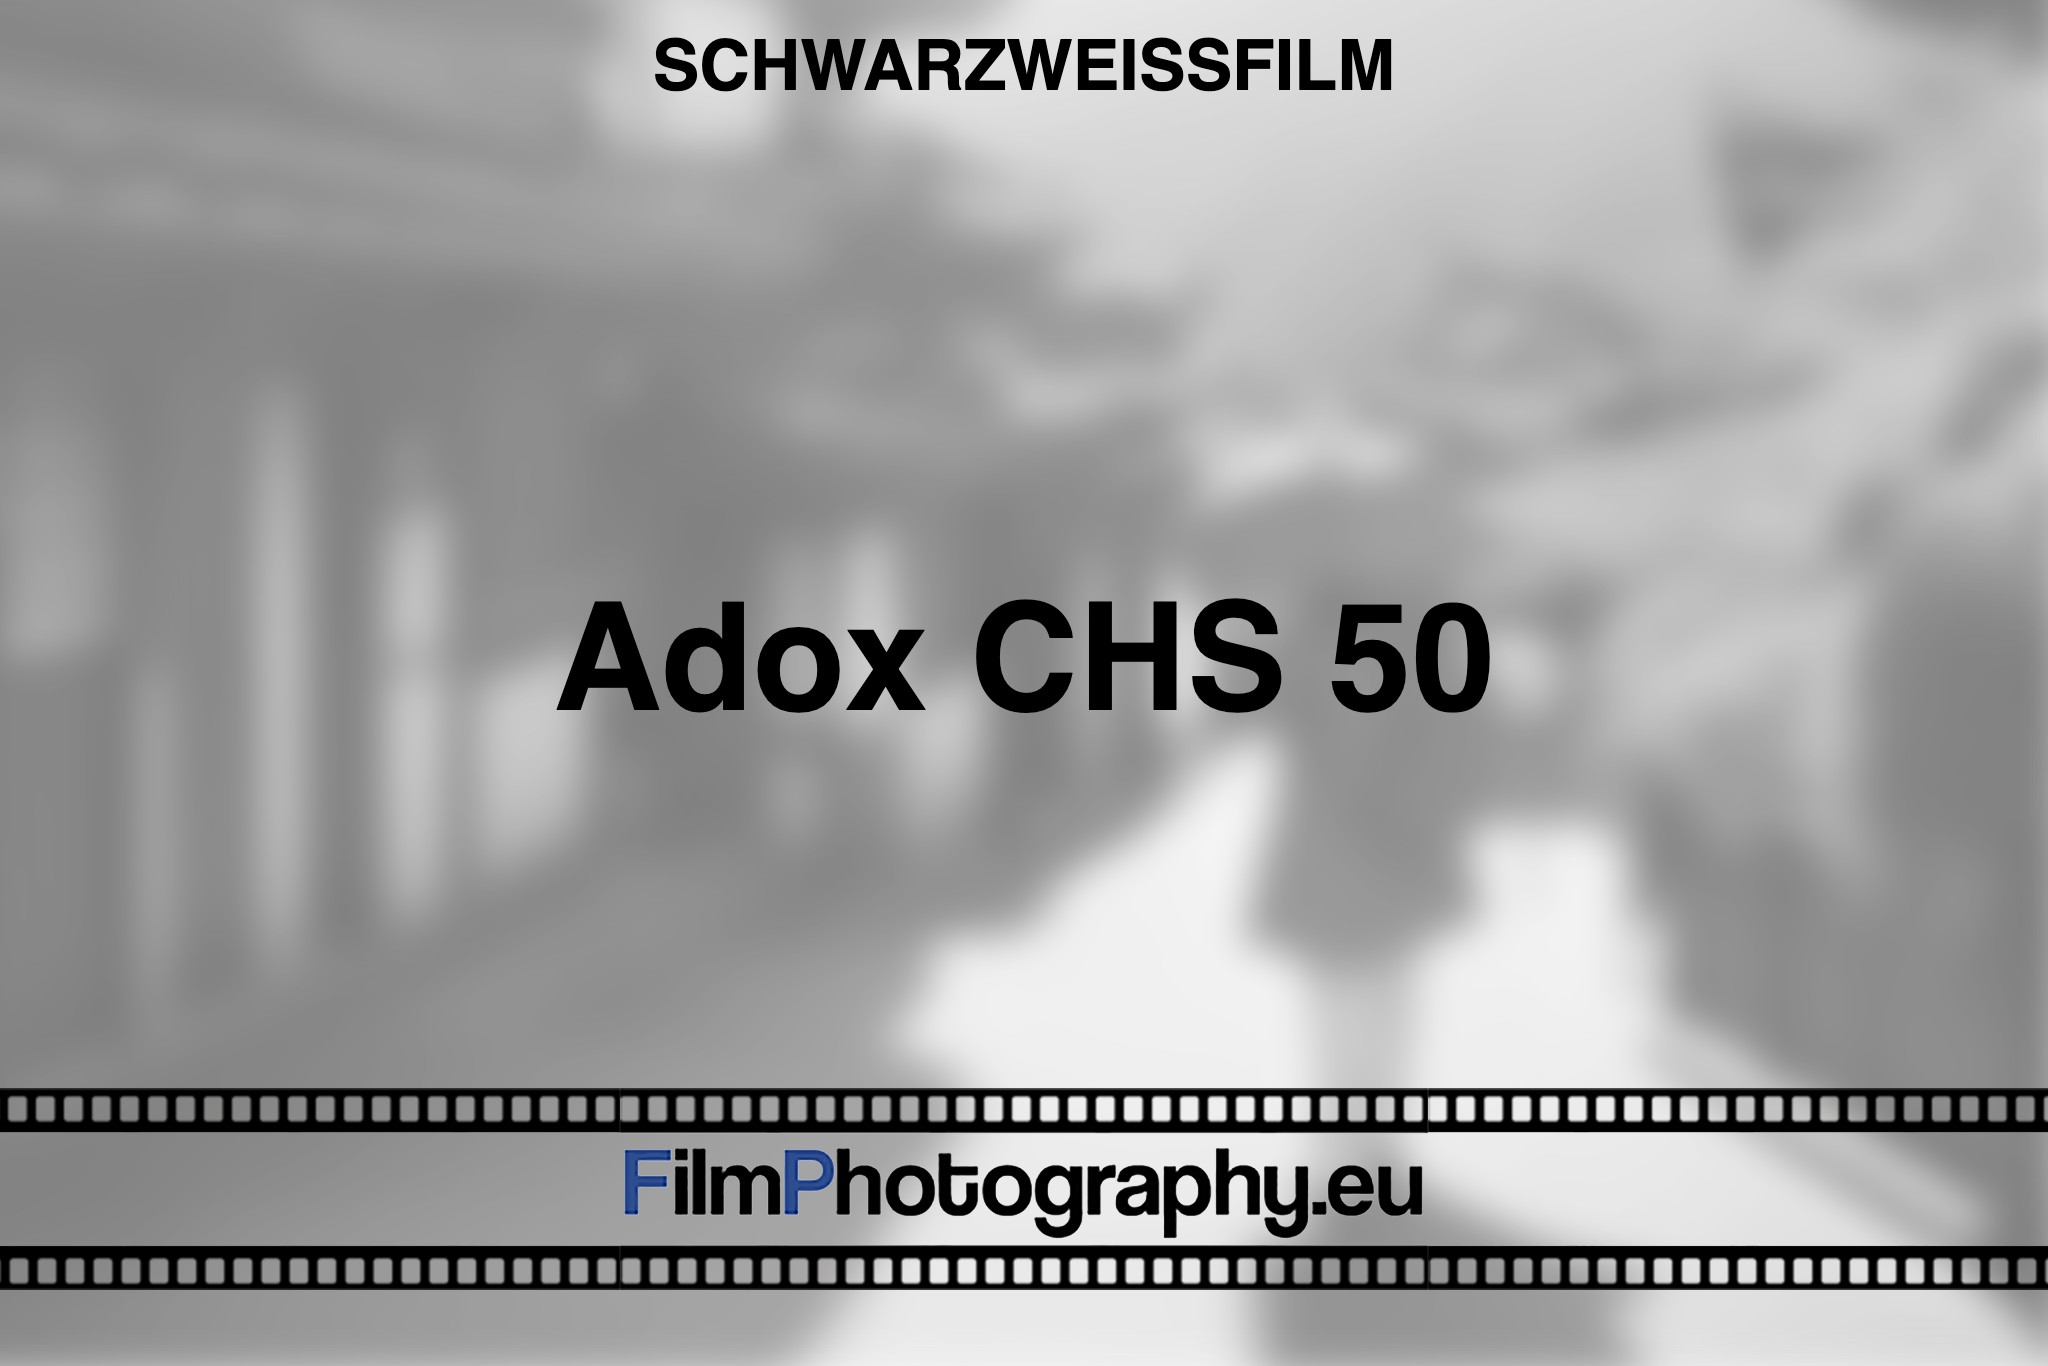 adox-chs-50-schwarzweißfilm-bnv